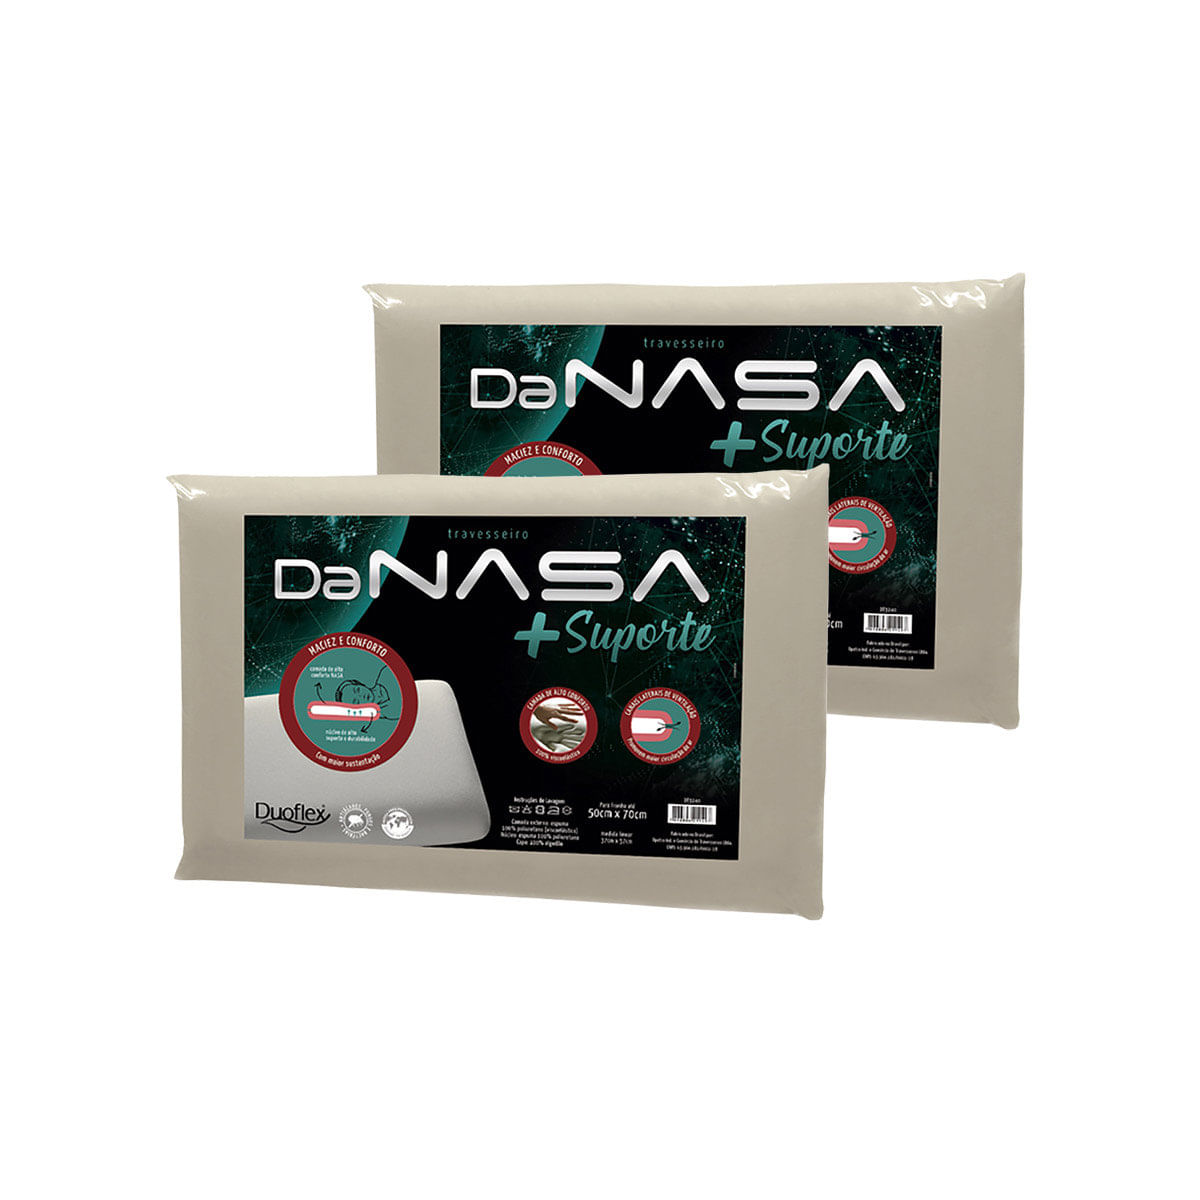 Travesseiro Nasa Fibrasca Viscoelástico - NASA Double Comfort - Travesseiro  Comum - Magazine Luiza